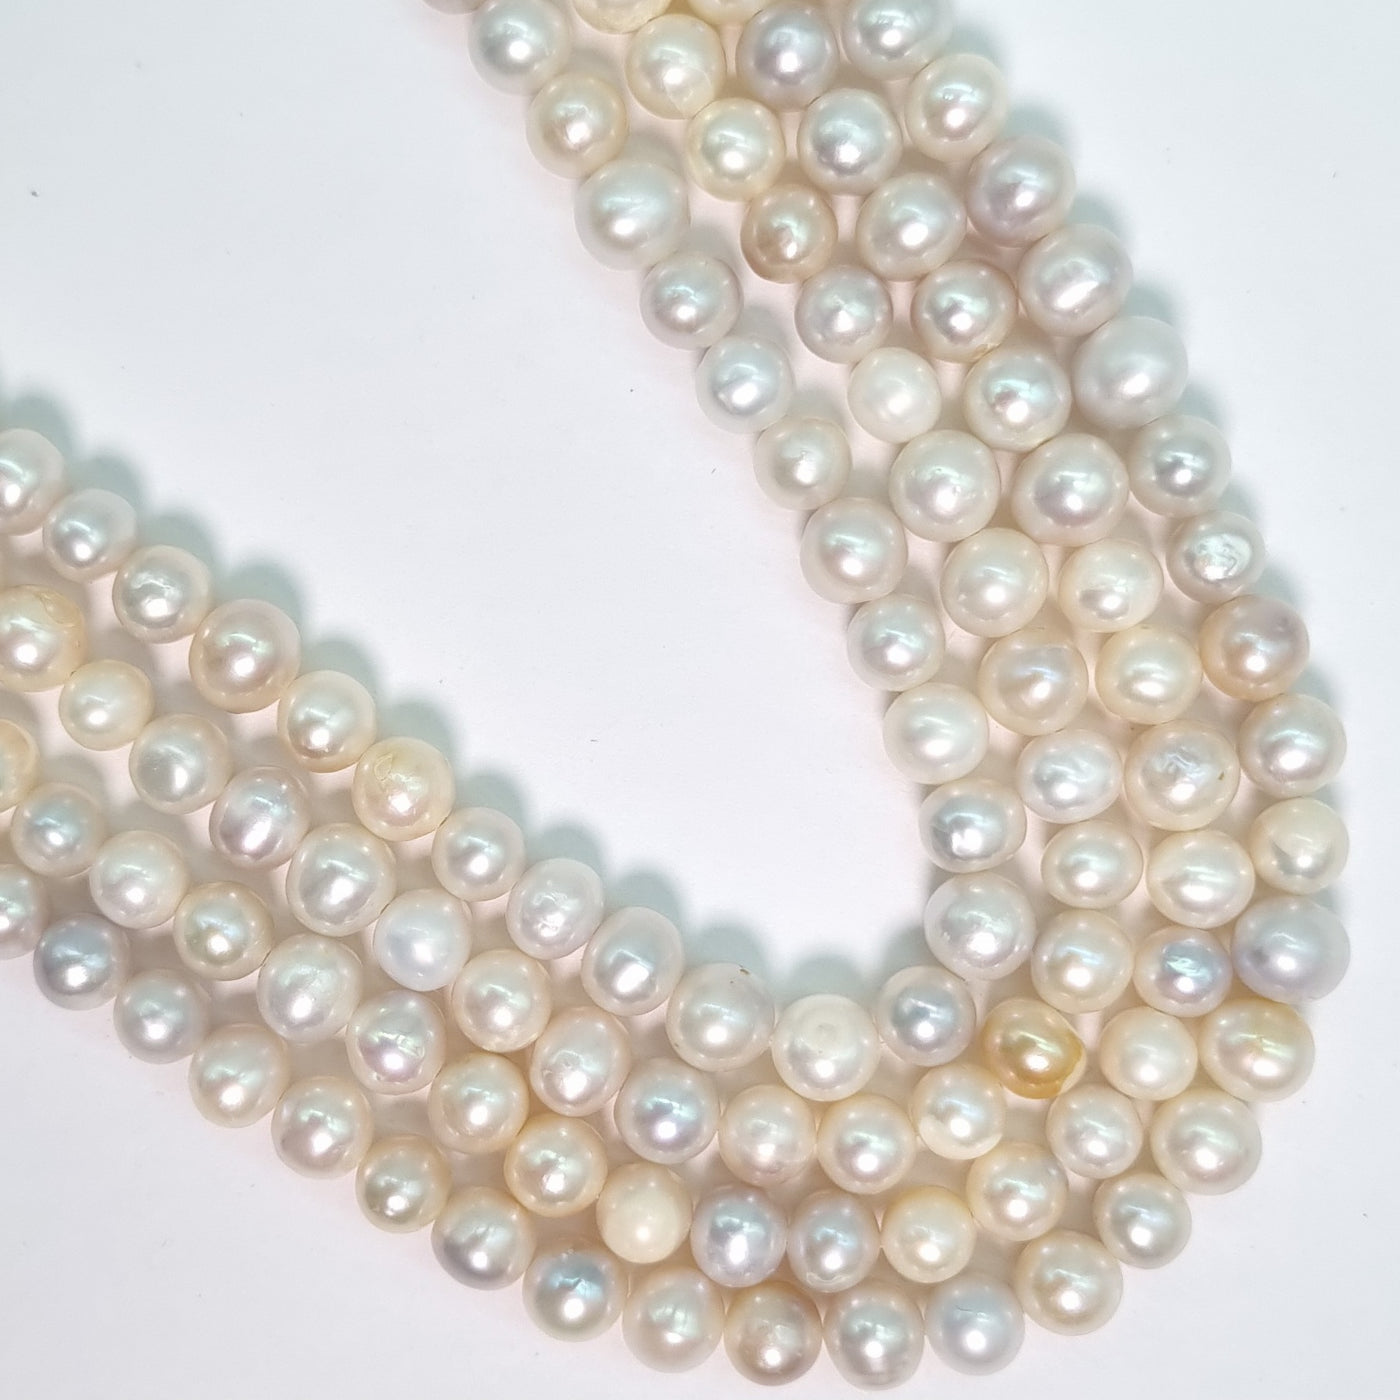 Perla Cultivada de 4-8 mm. por tira O2506